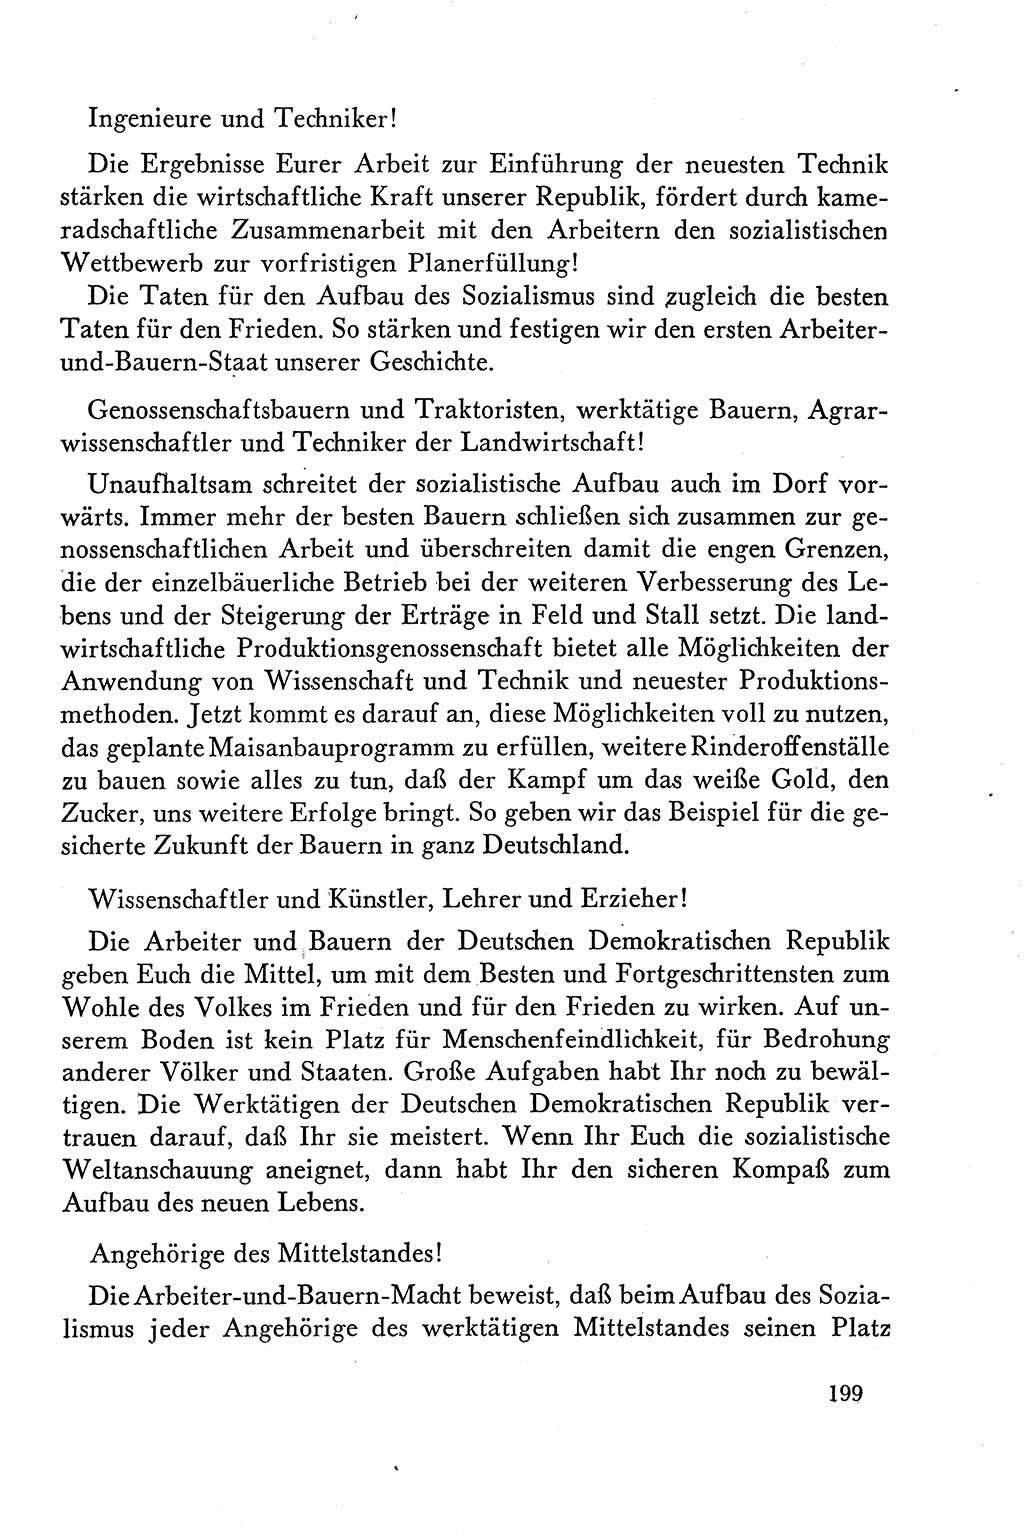 Dokumente der Sozialistischen Einheitspartei Deutschlands (SED) [Deutsche Demokratische Republik (DDR)] 1958-1959, Seite 199 (Dok. SED DDR 1958-1959, S. 199)